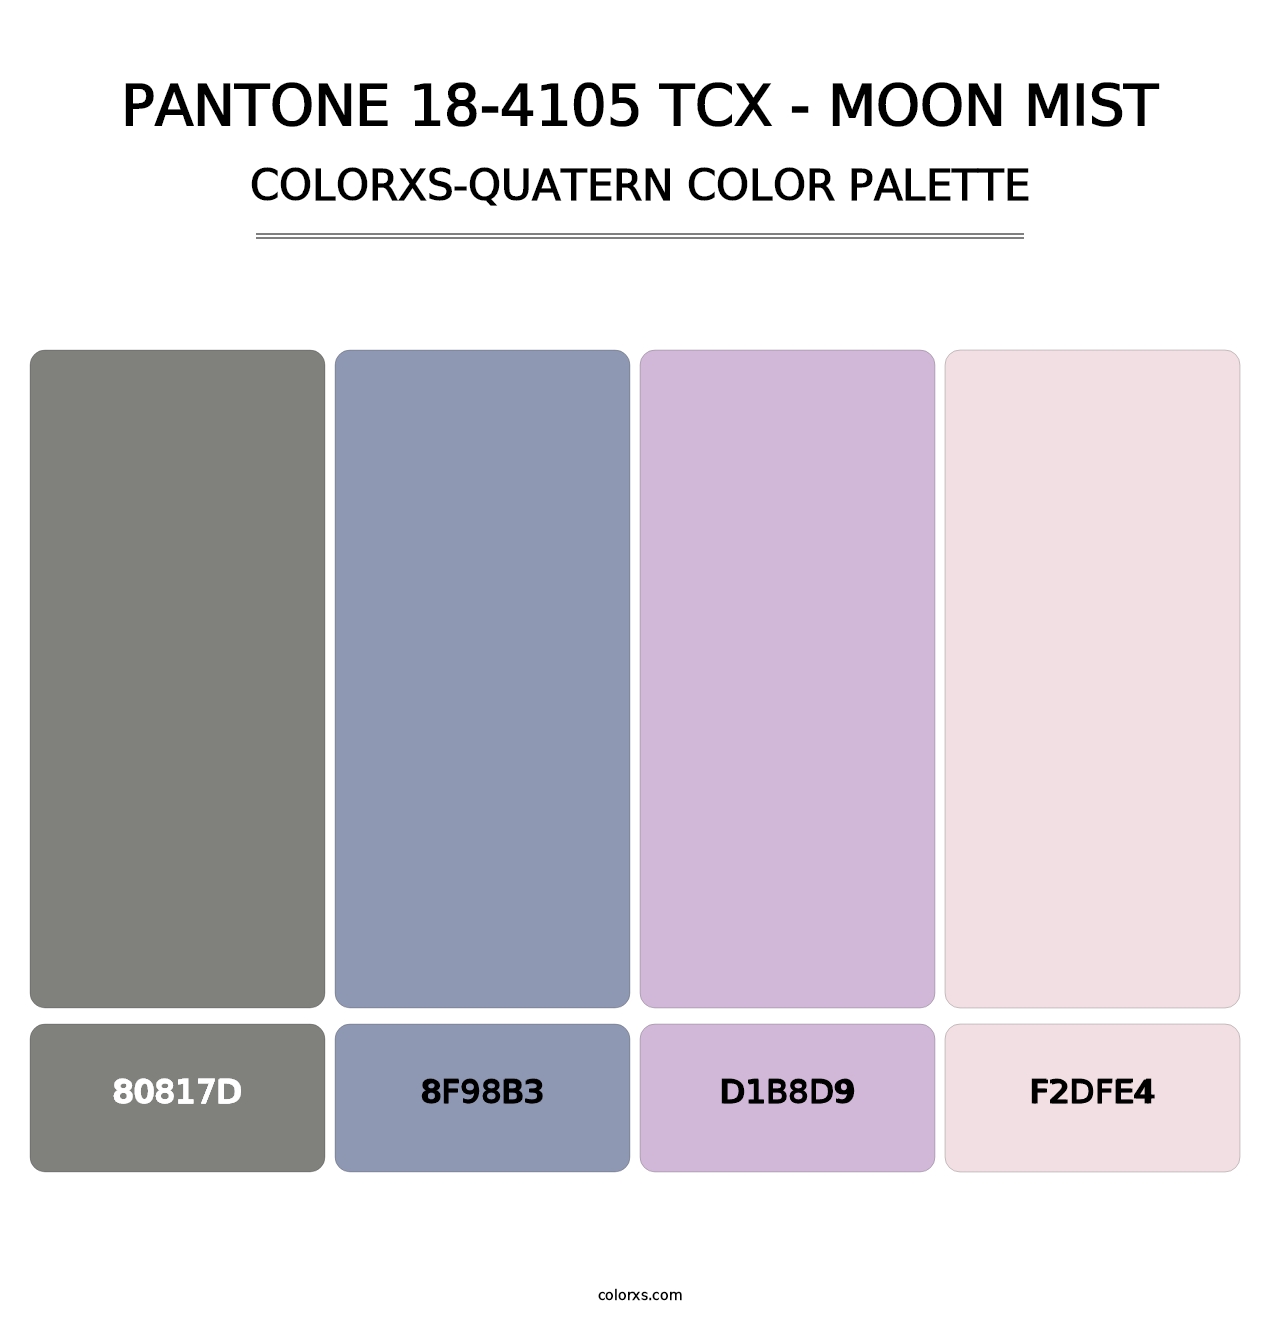 PANTONE 18-4105 TCX - Moon Mist - Colorxs Quatern Palette